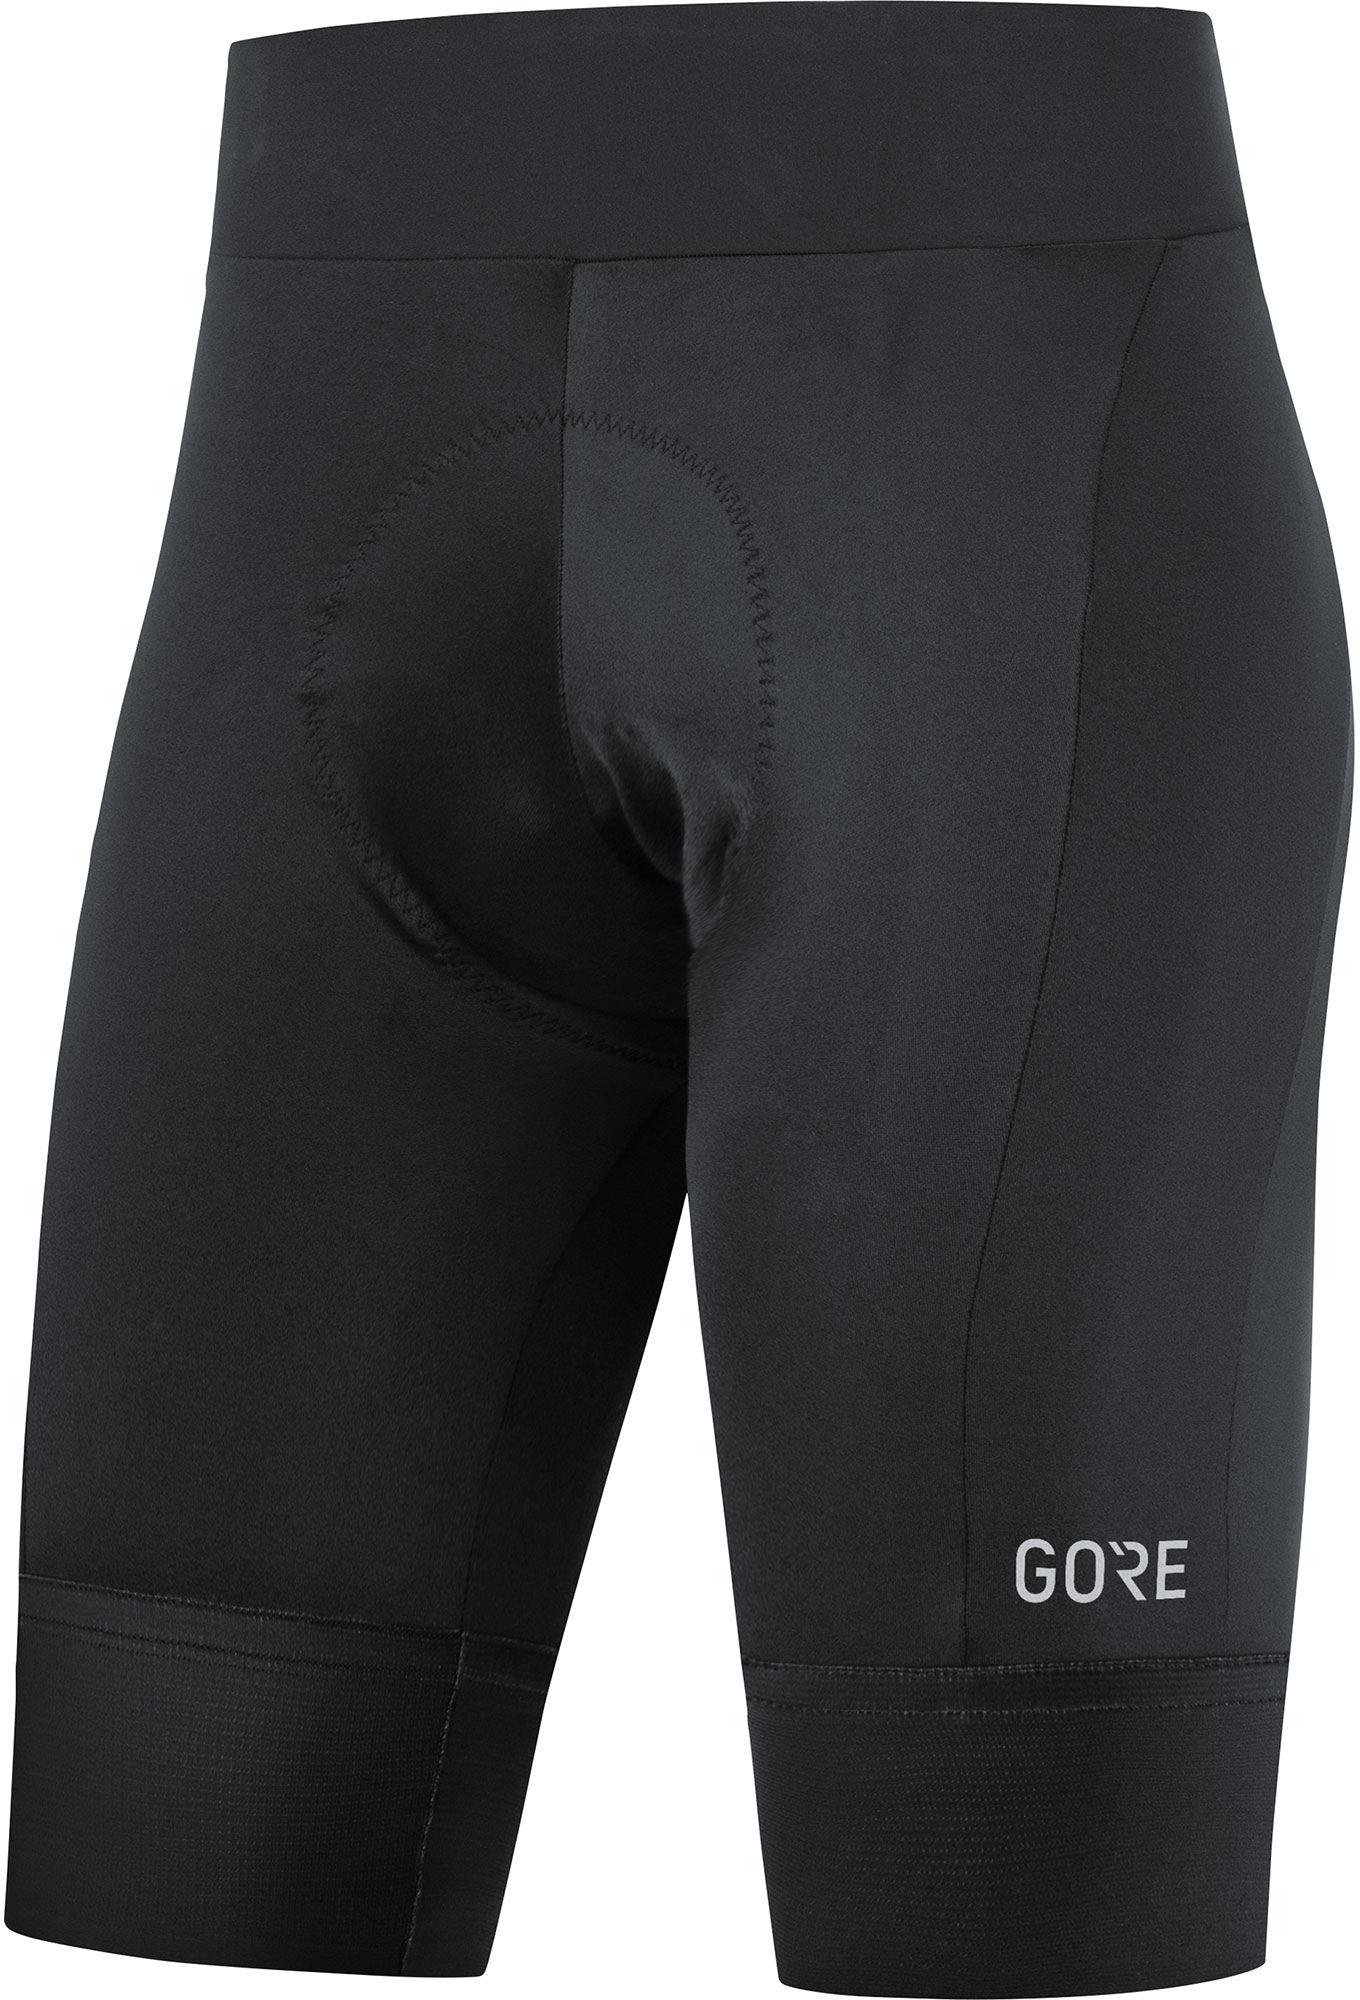 Gorewear Womens Ardent Short Tights Plus - Black